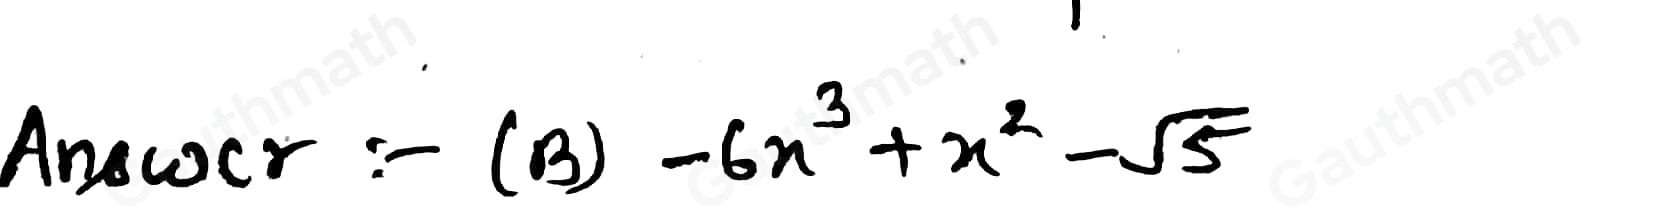 Which algebraic expression is a polynomial? 4x2-3x+ 2/x -6x3+x2- square root of 5 8x2+ square root of x -2x4+ 3/2x